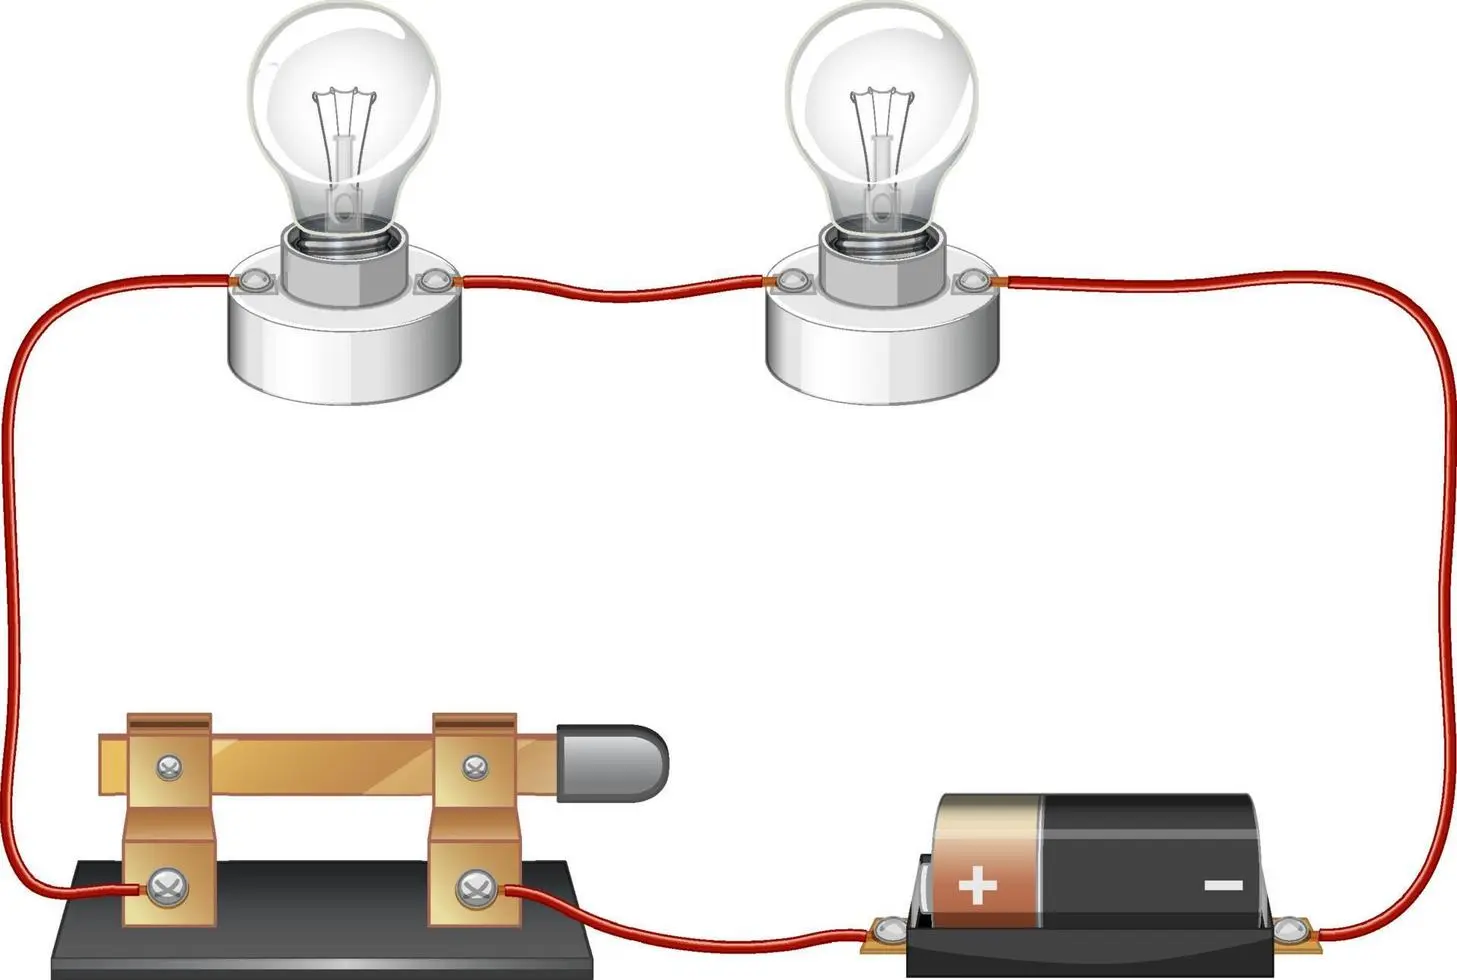 baterias electricas circuitos - Cómo funciona un circuito eléctrico con una pila